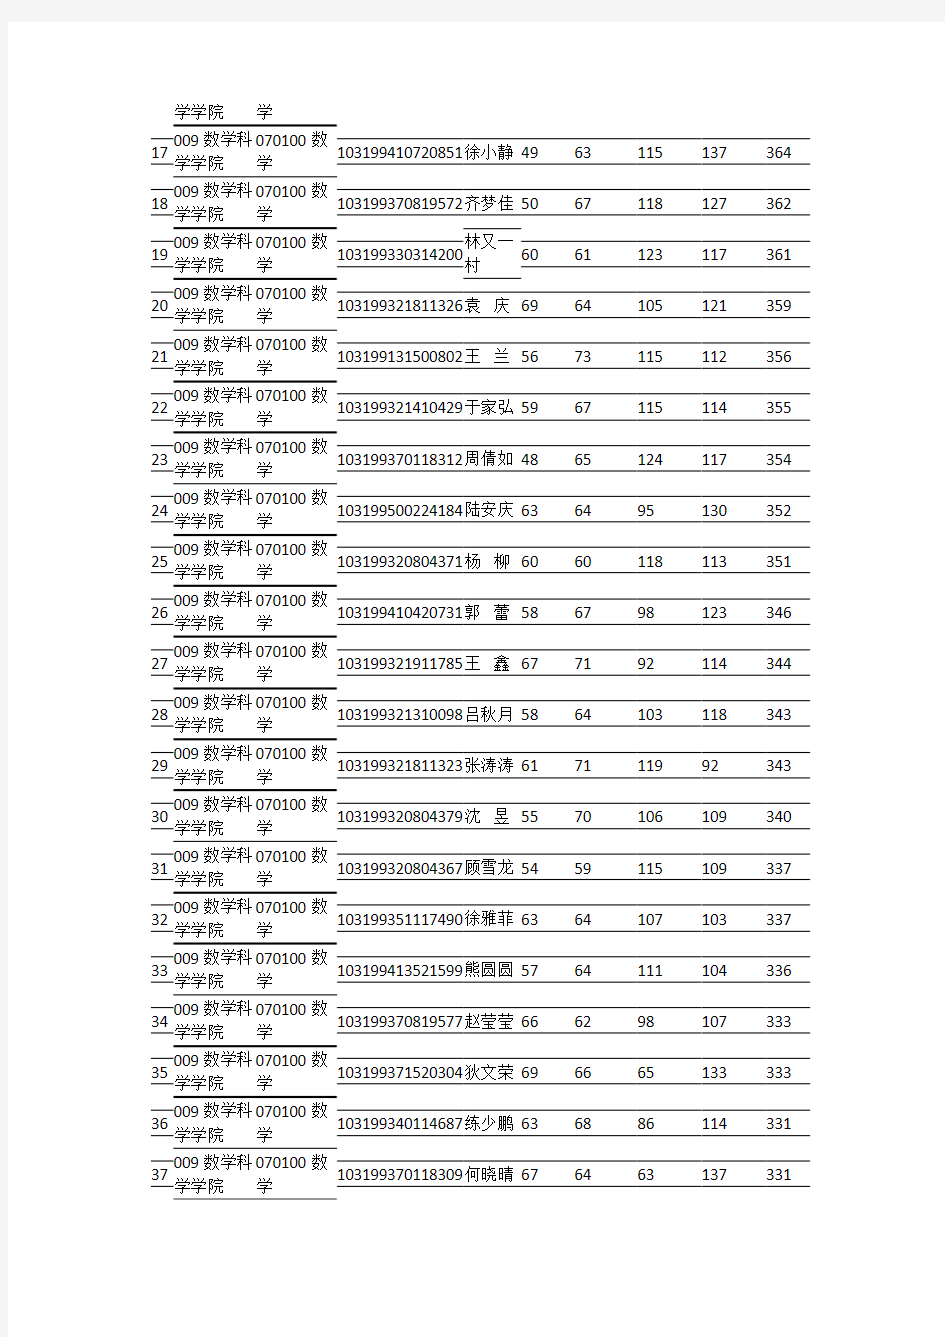 南京师范大学2019年数学科学学院硕士复试名单公示